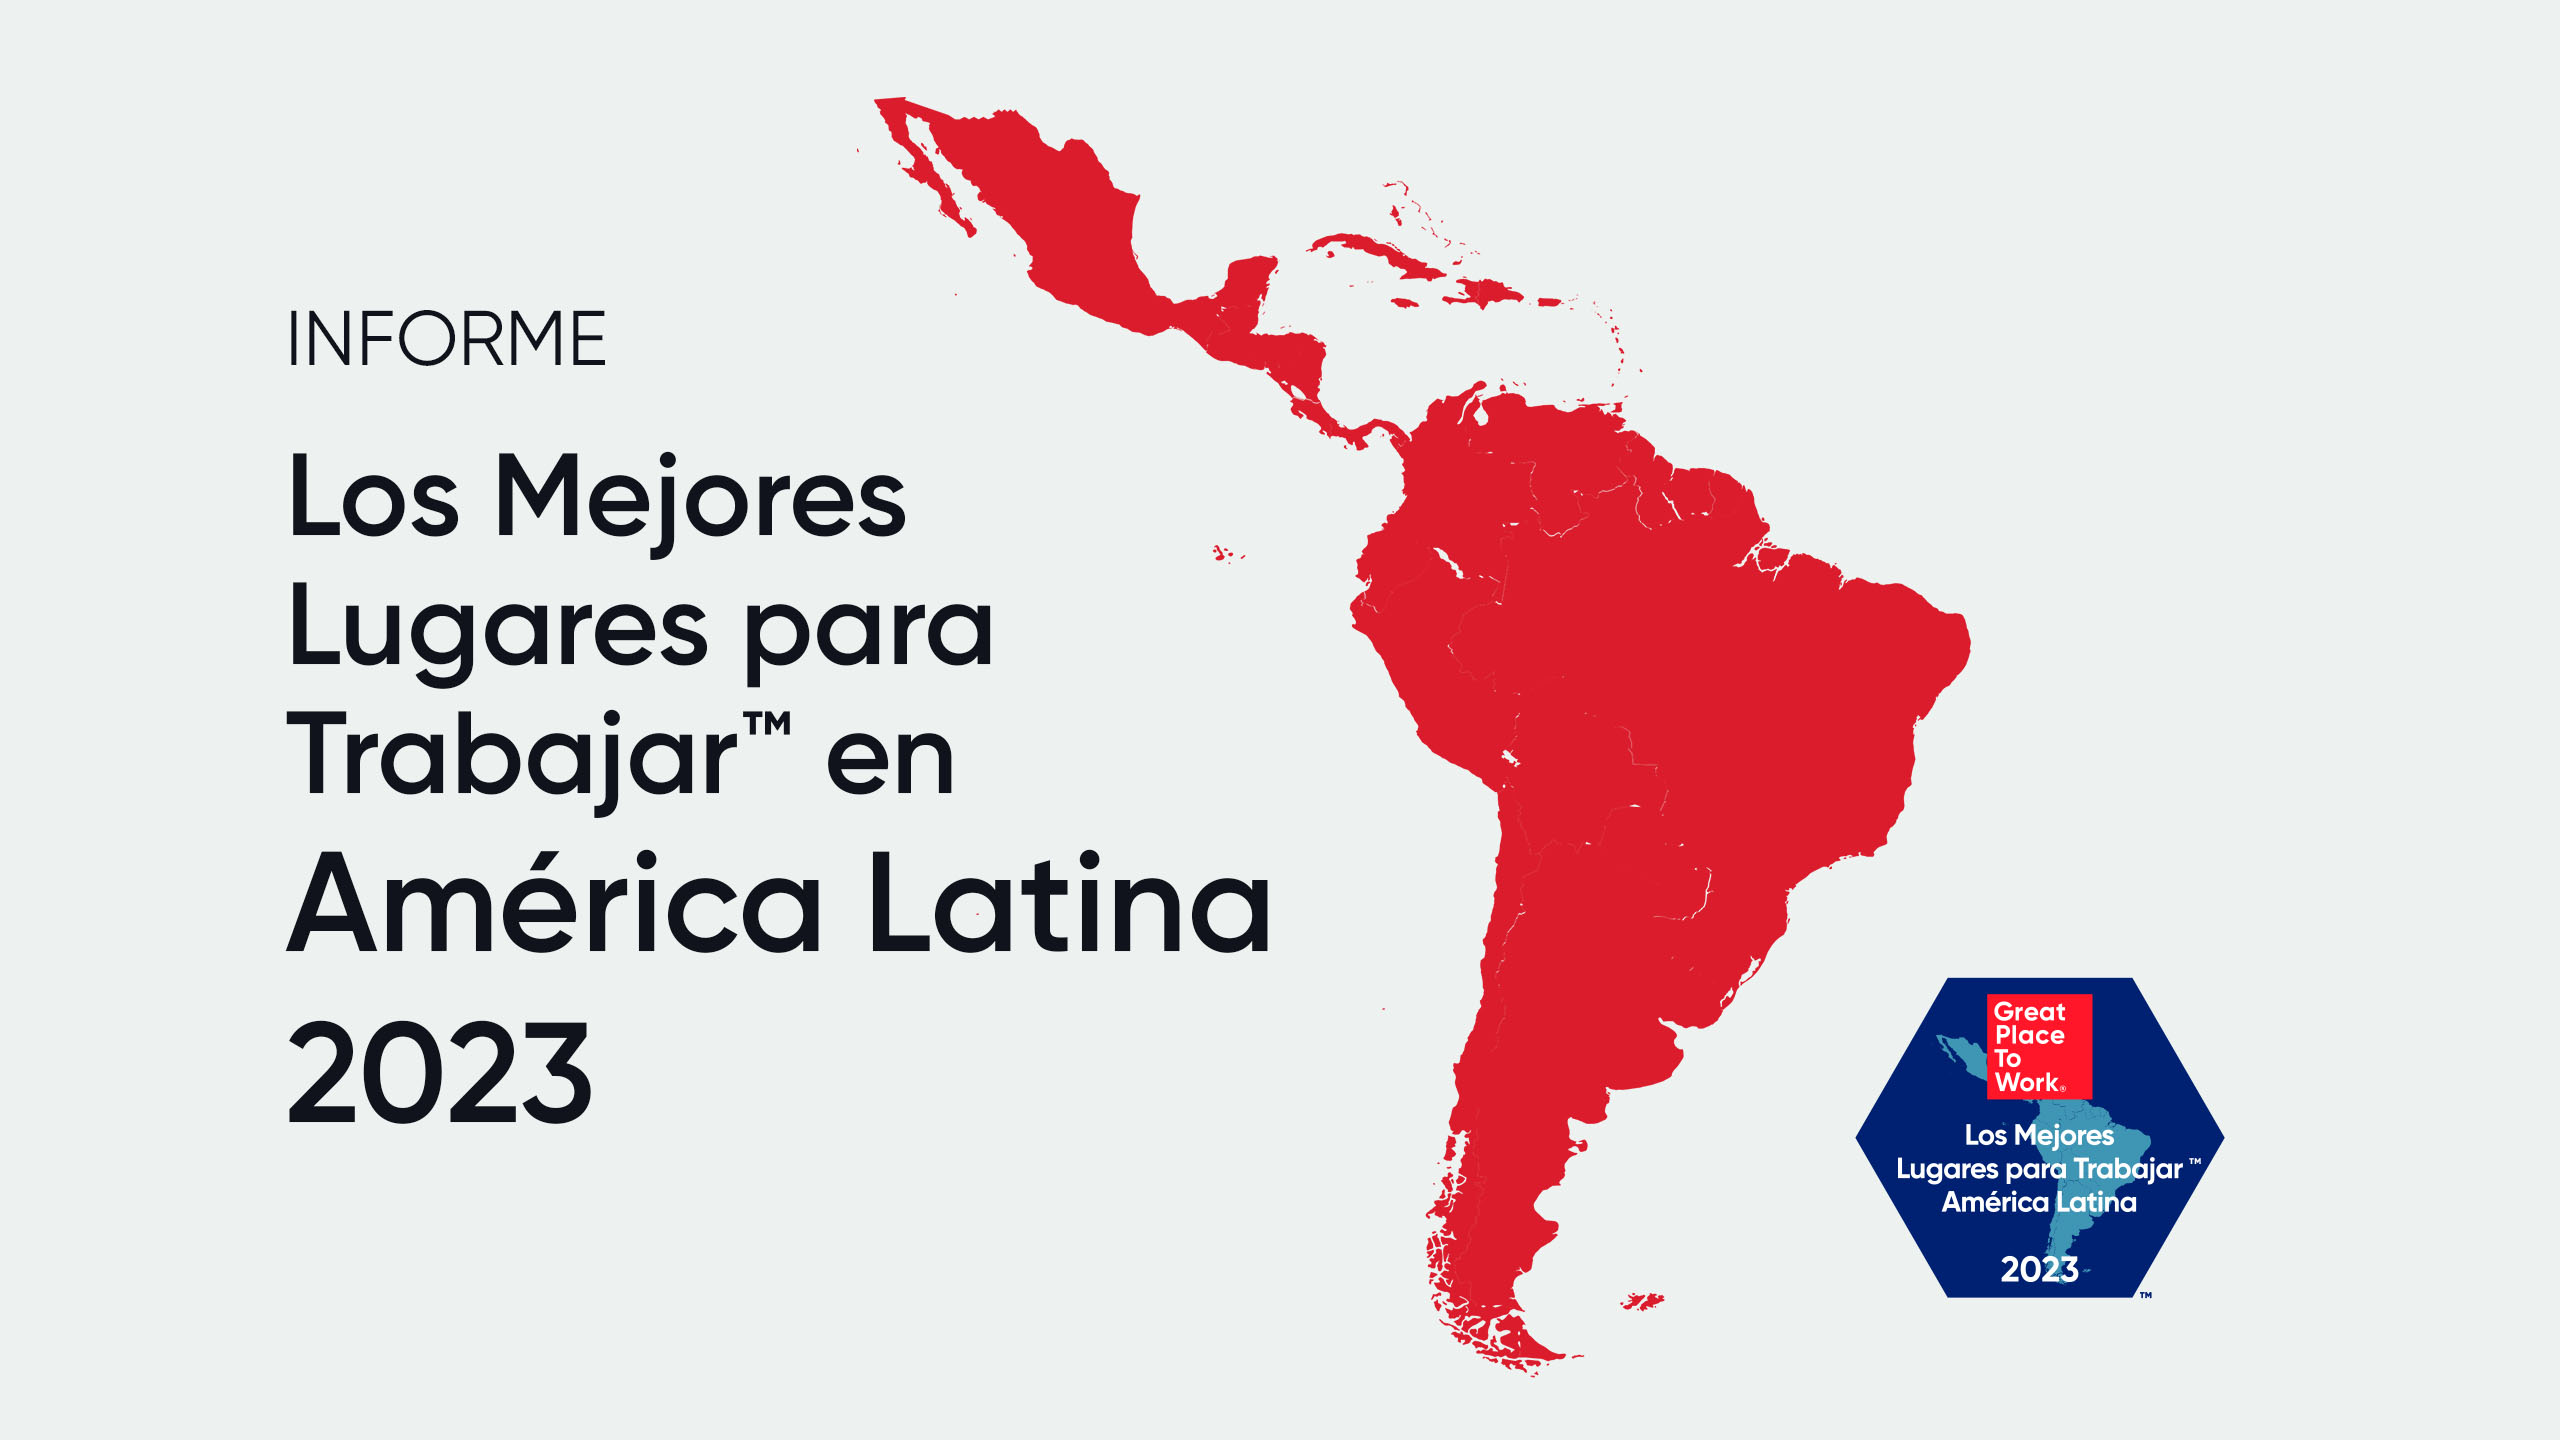 Reporte: Los Mejores Lugares para Trabajar™ en América Latina 2023